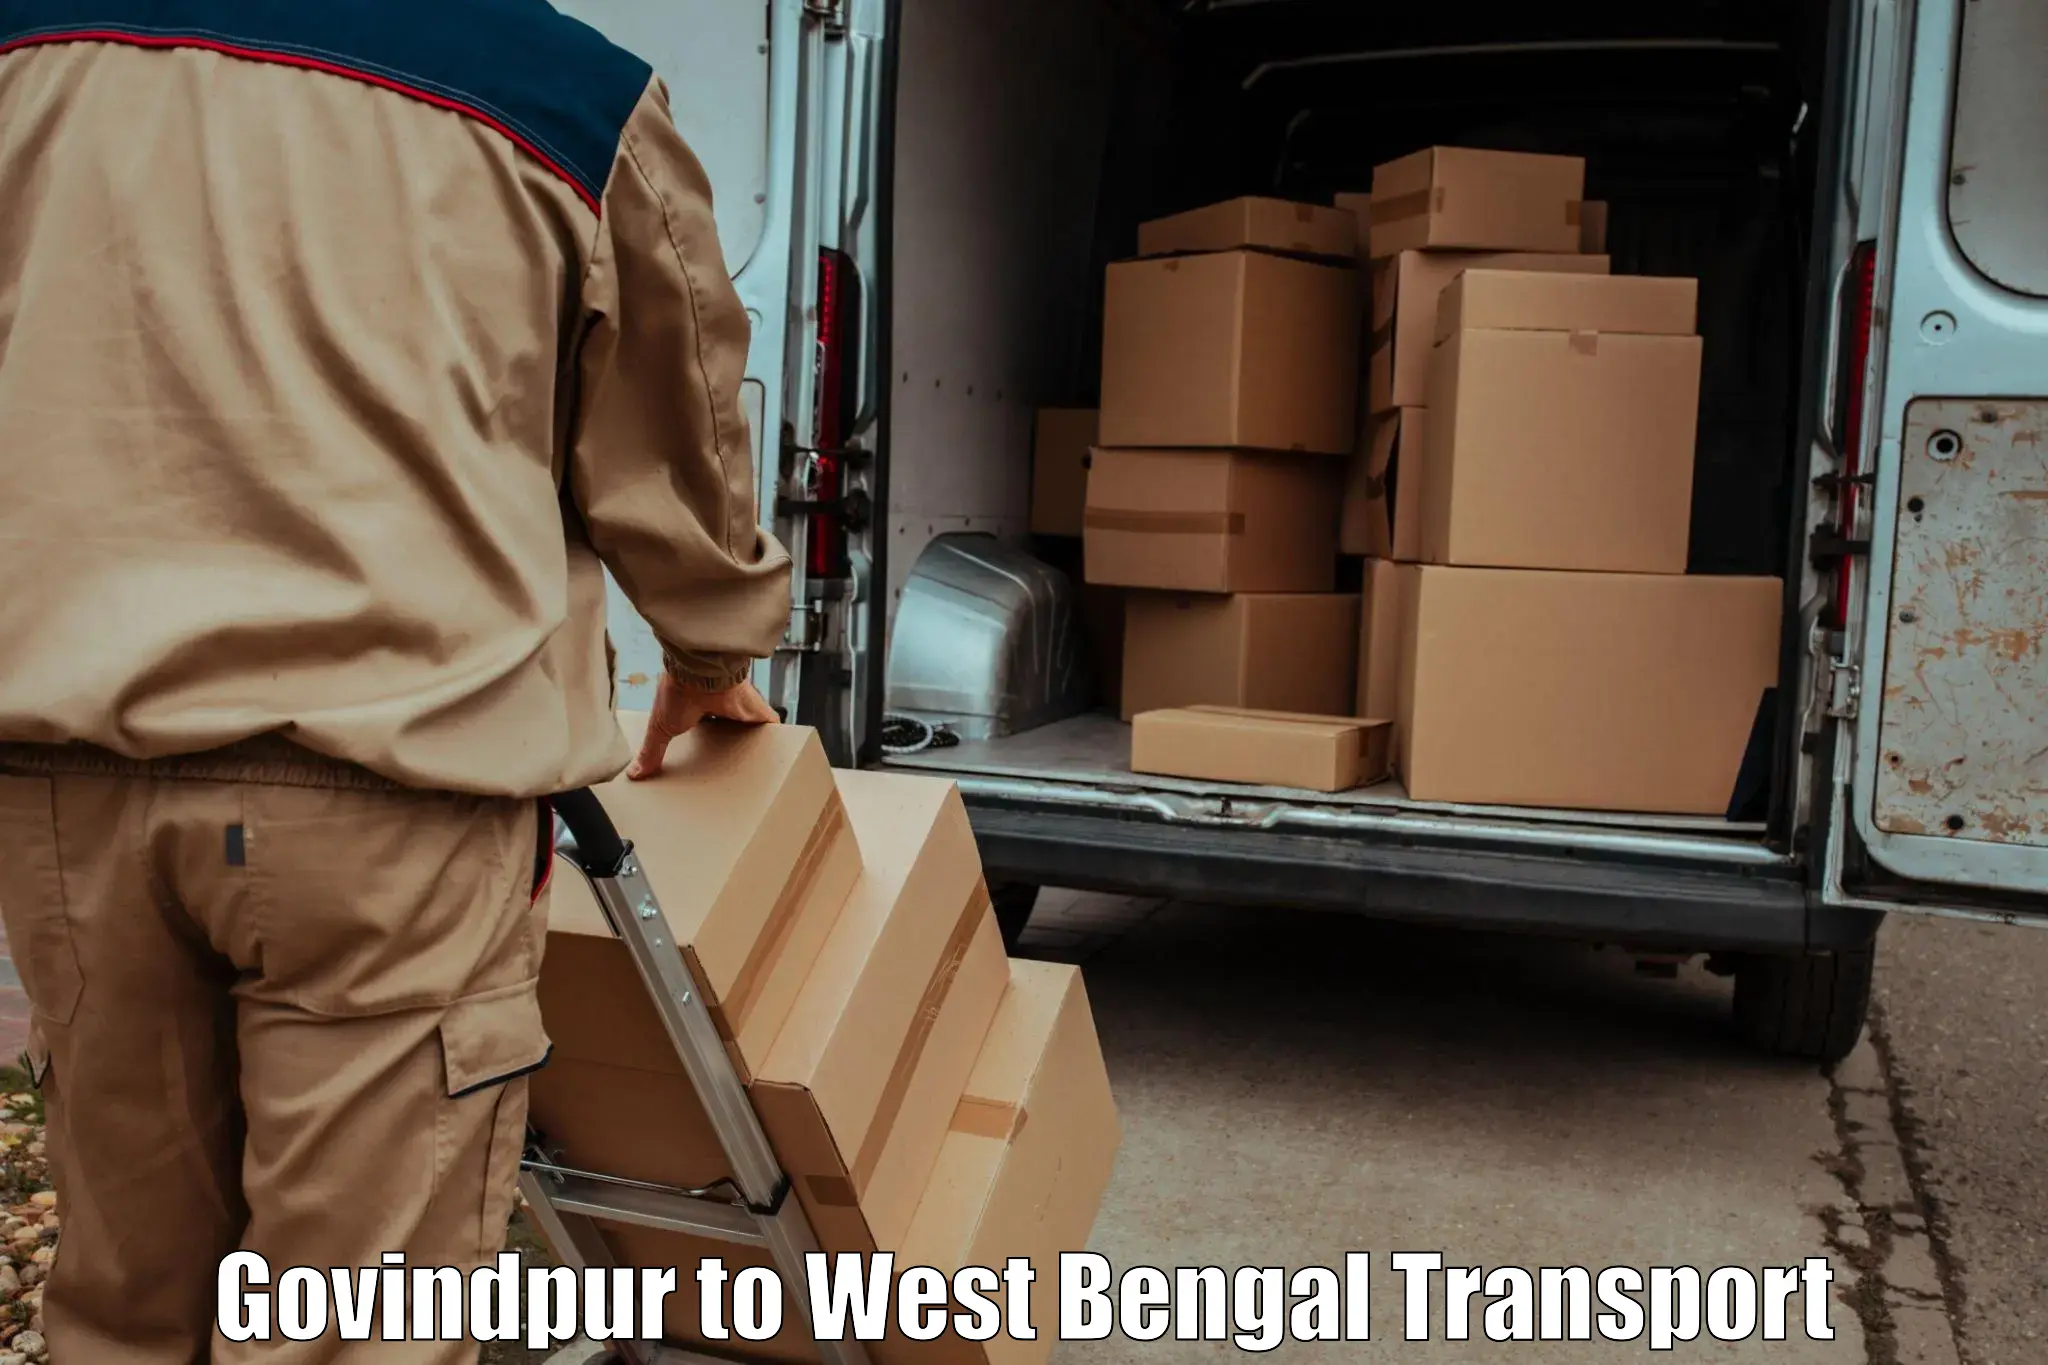 Daily transport service Govindpur to Birbhum